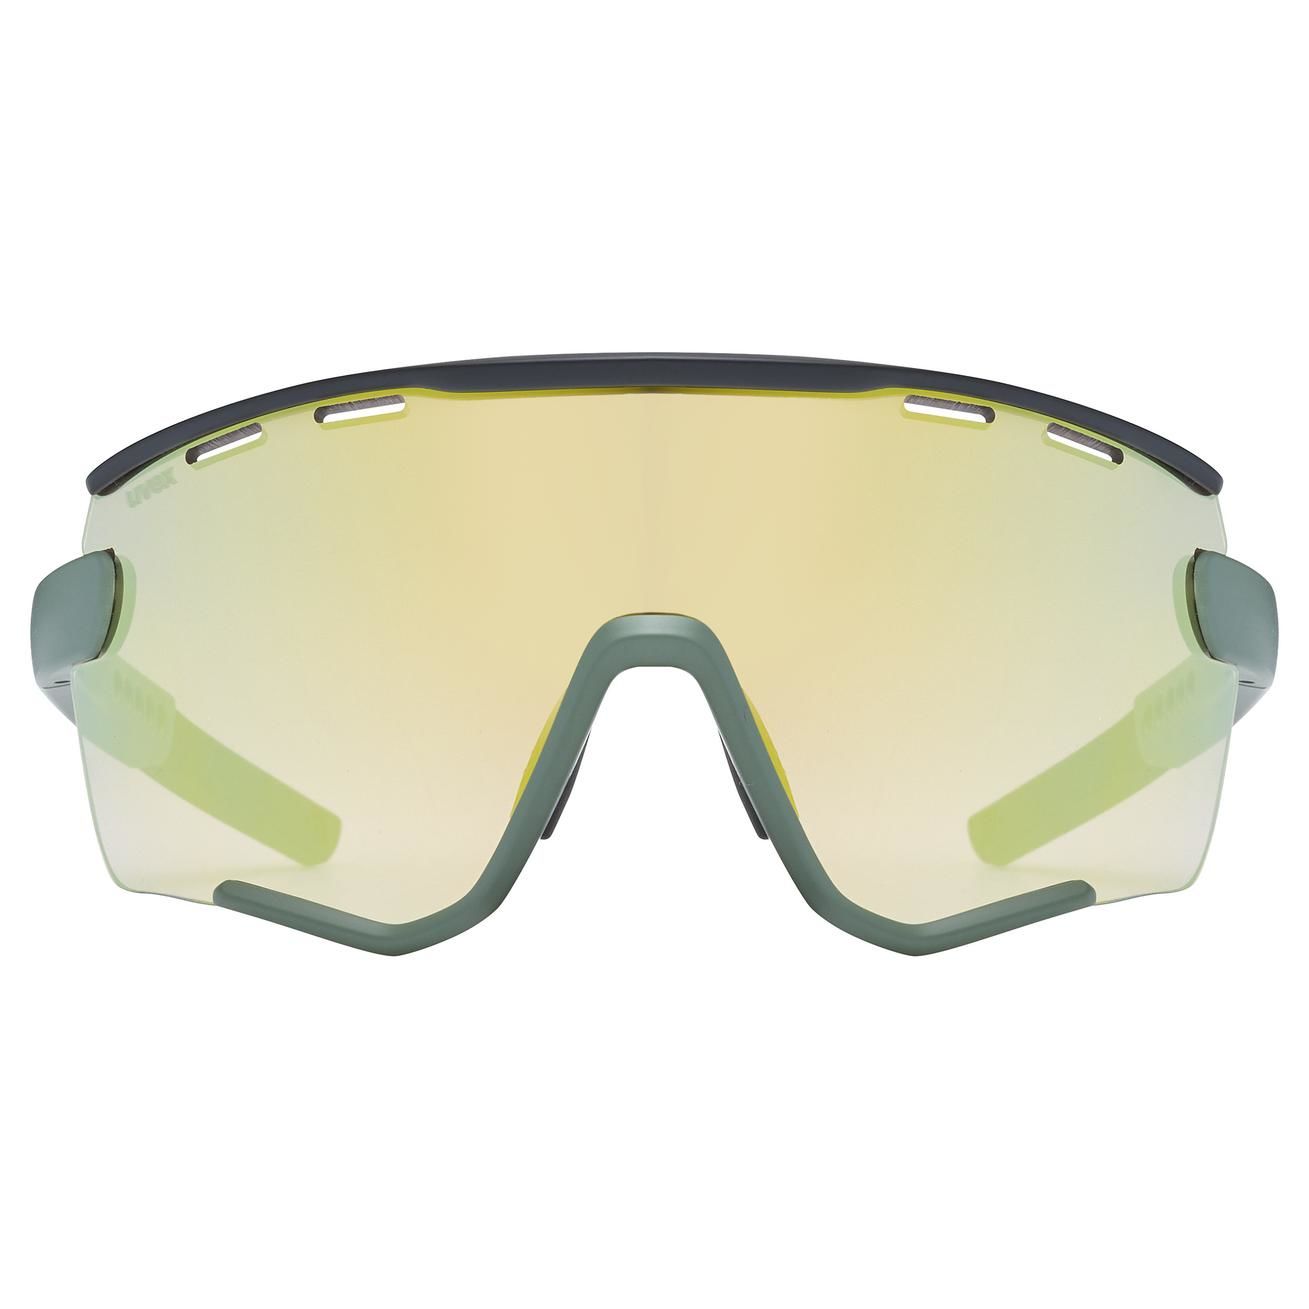 slnečné okuliare uvex sportstyle 236 Set moss green-black mat s2, s0